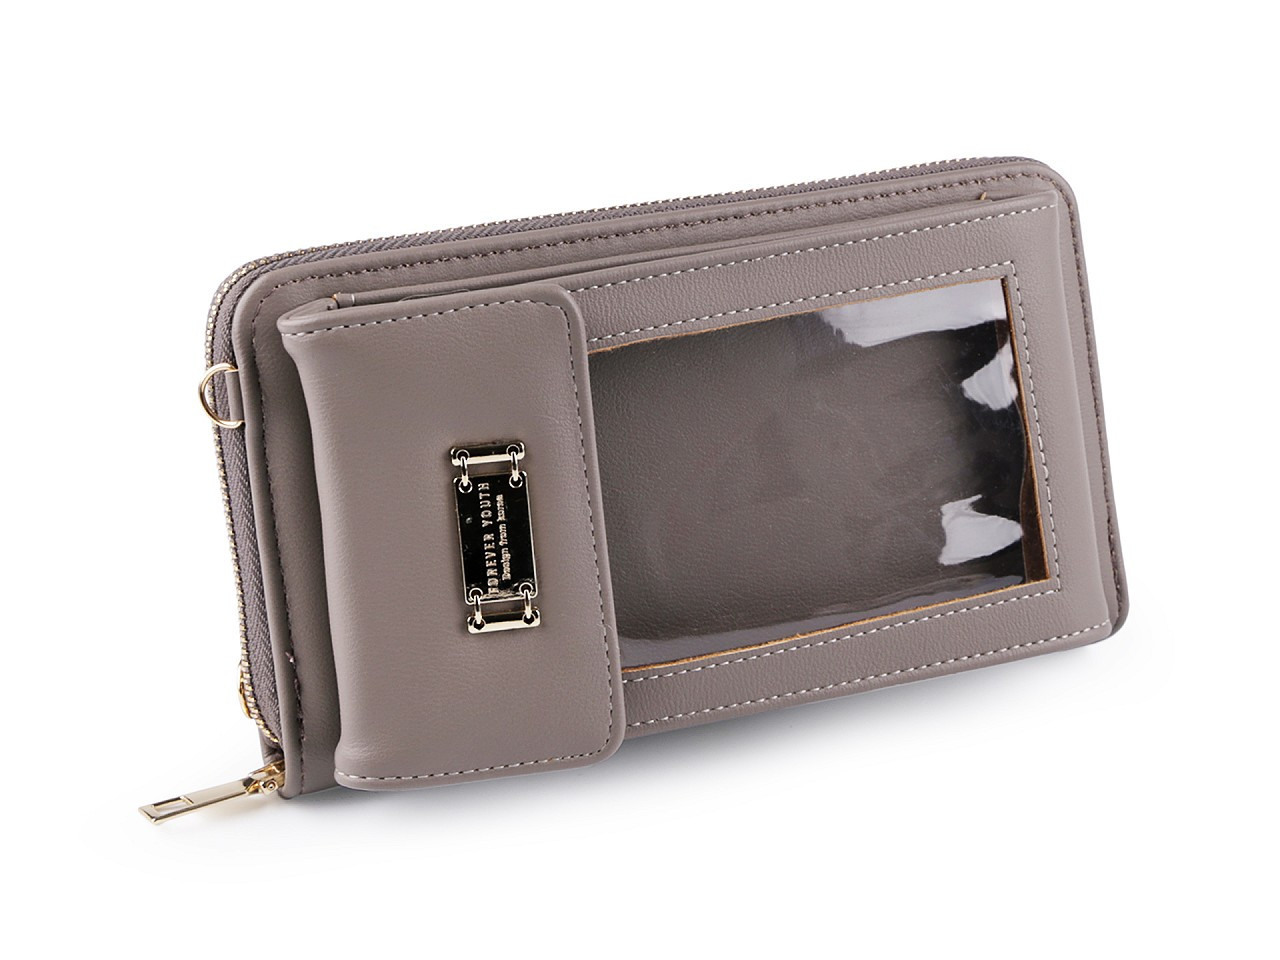 Peněženka s pouzdrem na mobil 11x19 cm, barva 3 béžová tm.